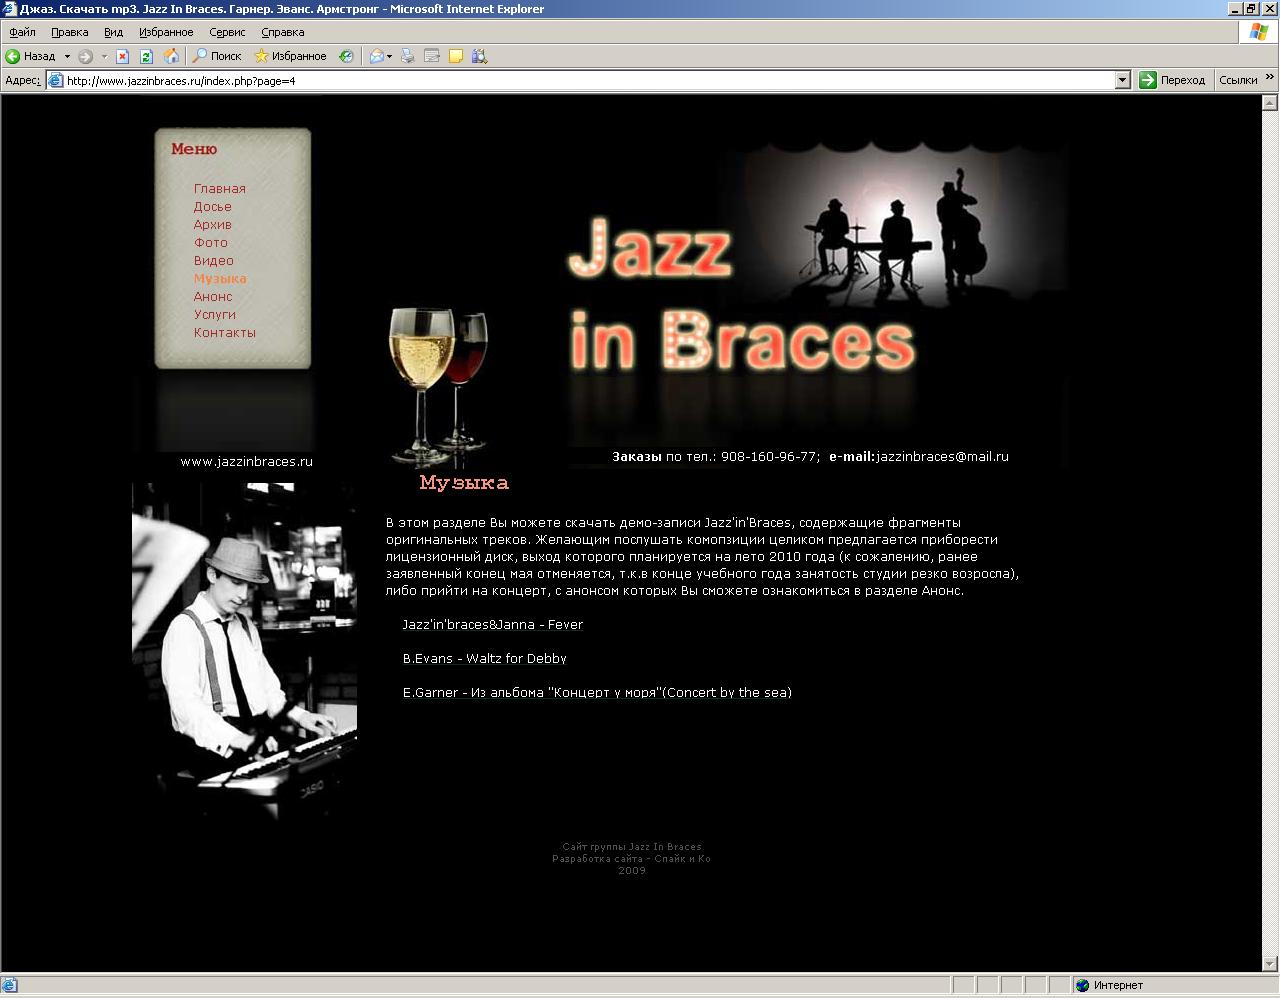 www.jazzinbraces.ru